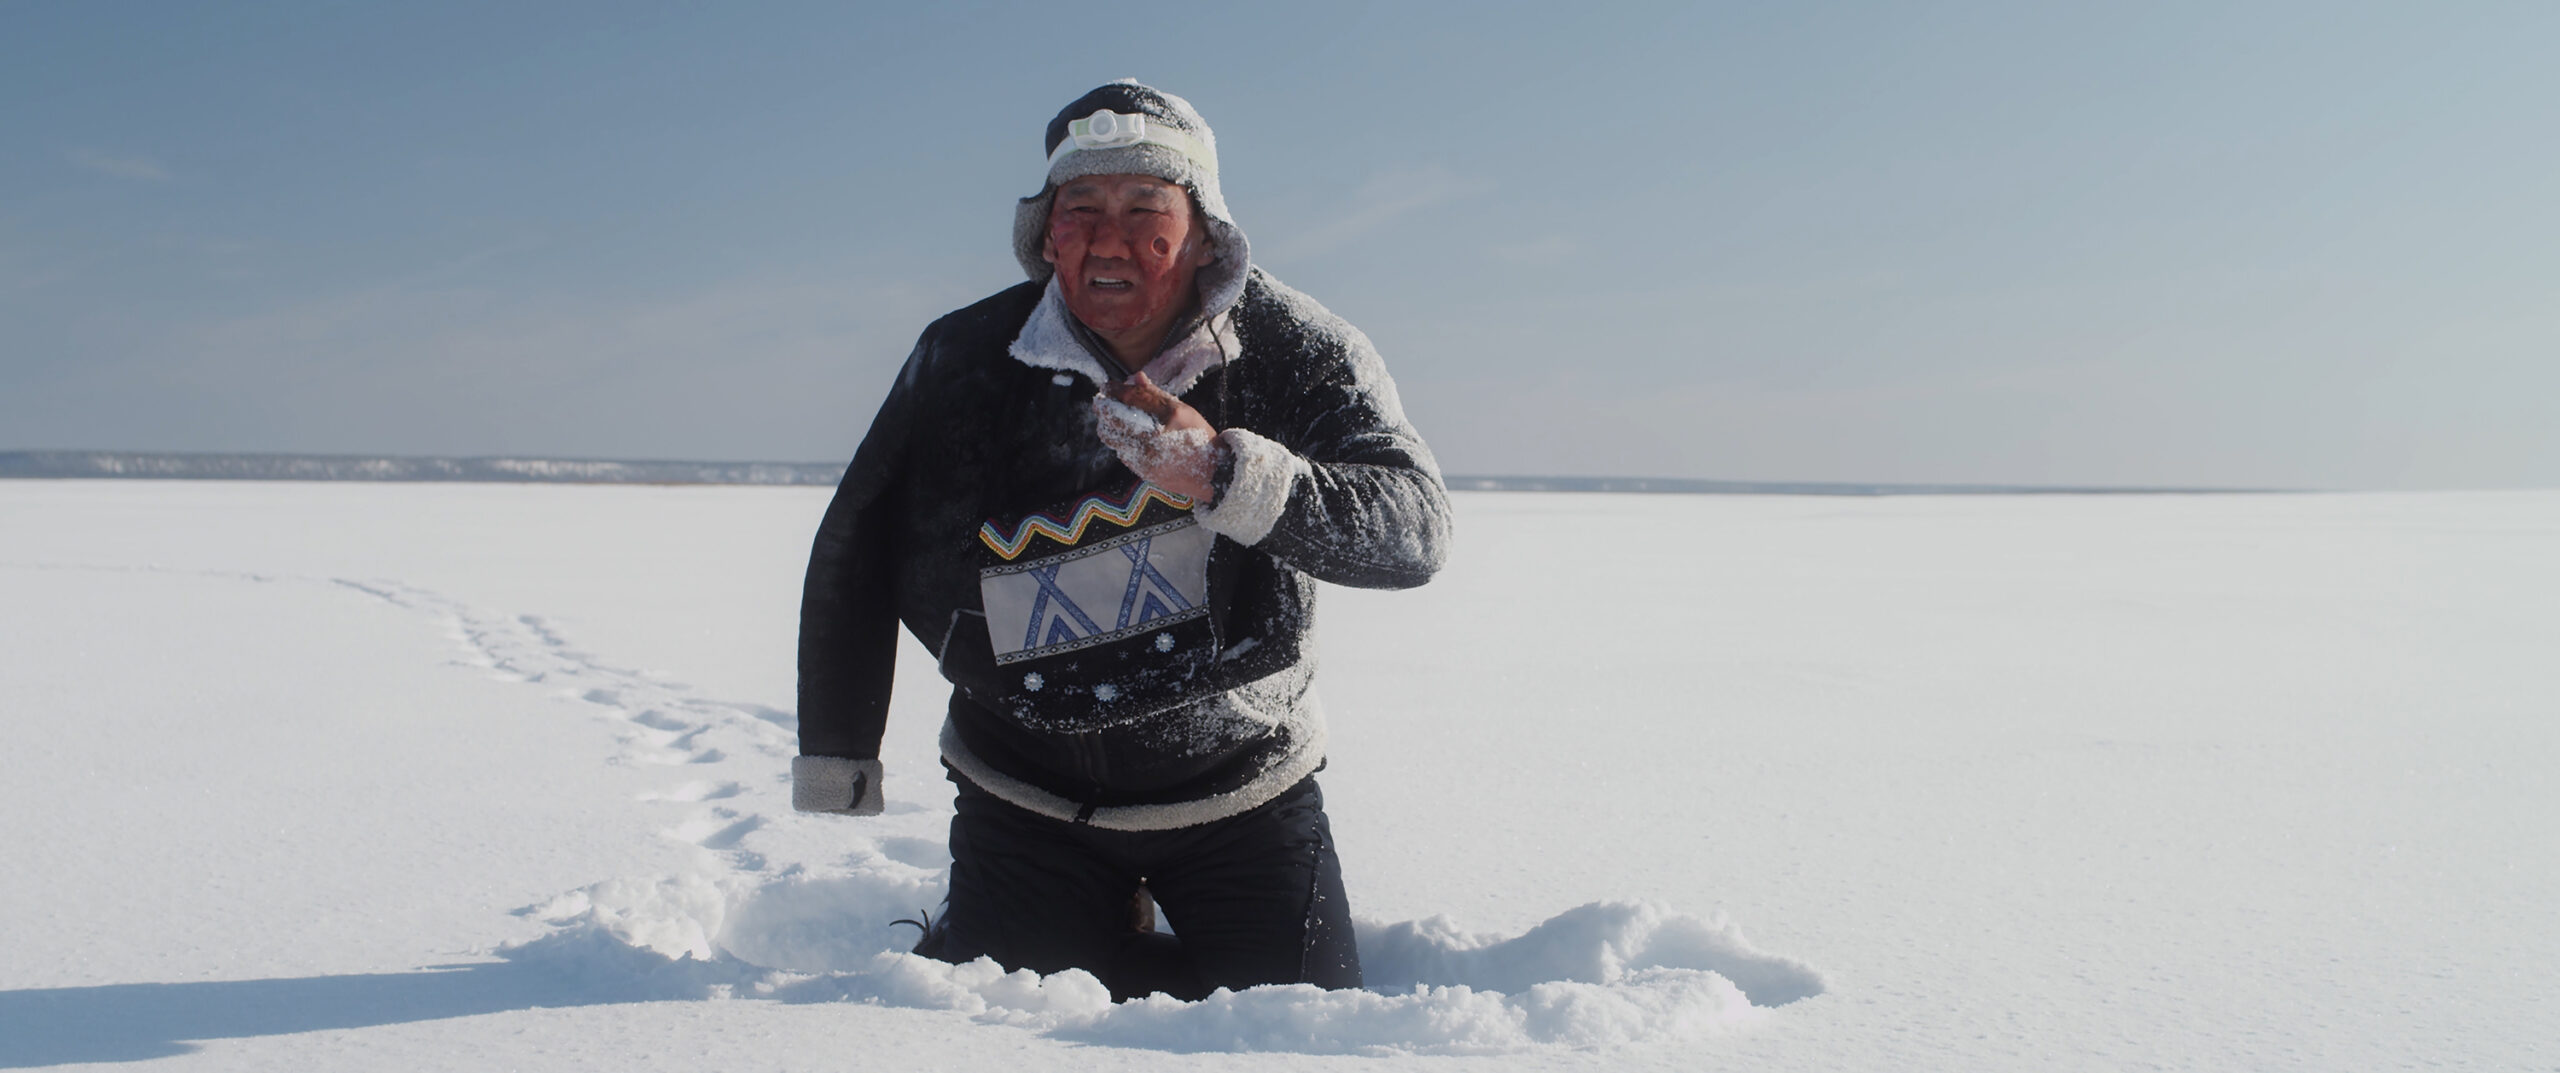 Якутский фильм «Черный снег» вошел в список лучших фильмов РФ 2021 года по версии Hi-Fi.ru